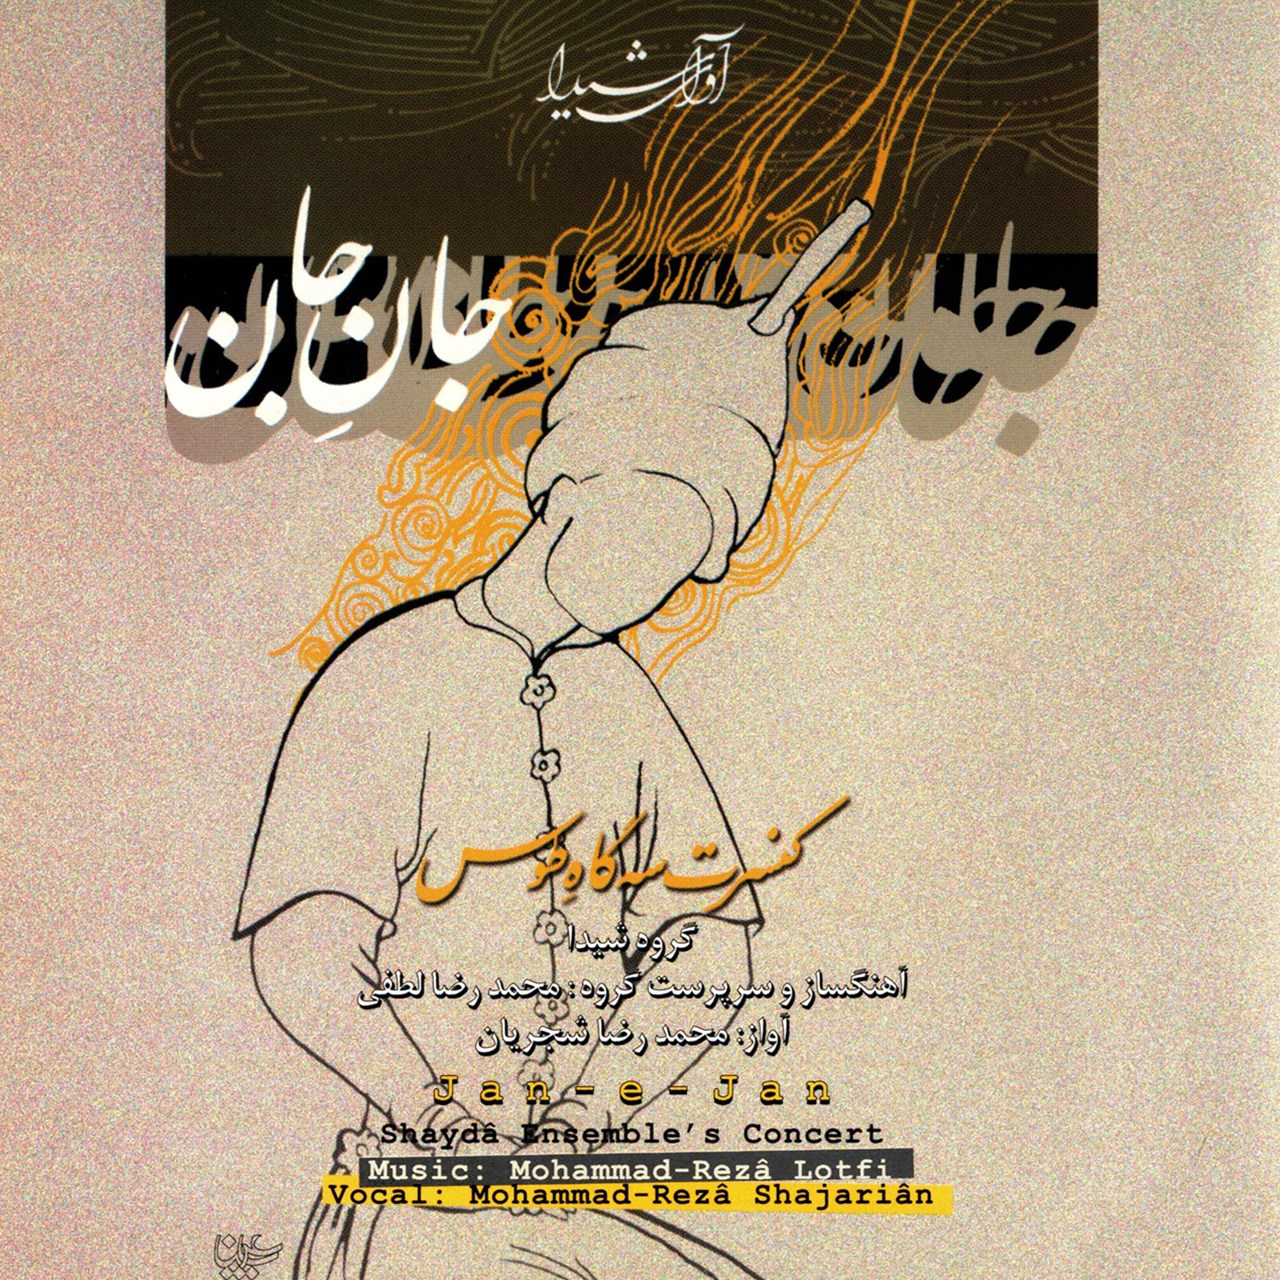 آلبوم جان جان کنسرت سه گاه طوس اثر محمد رضا شجریان